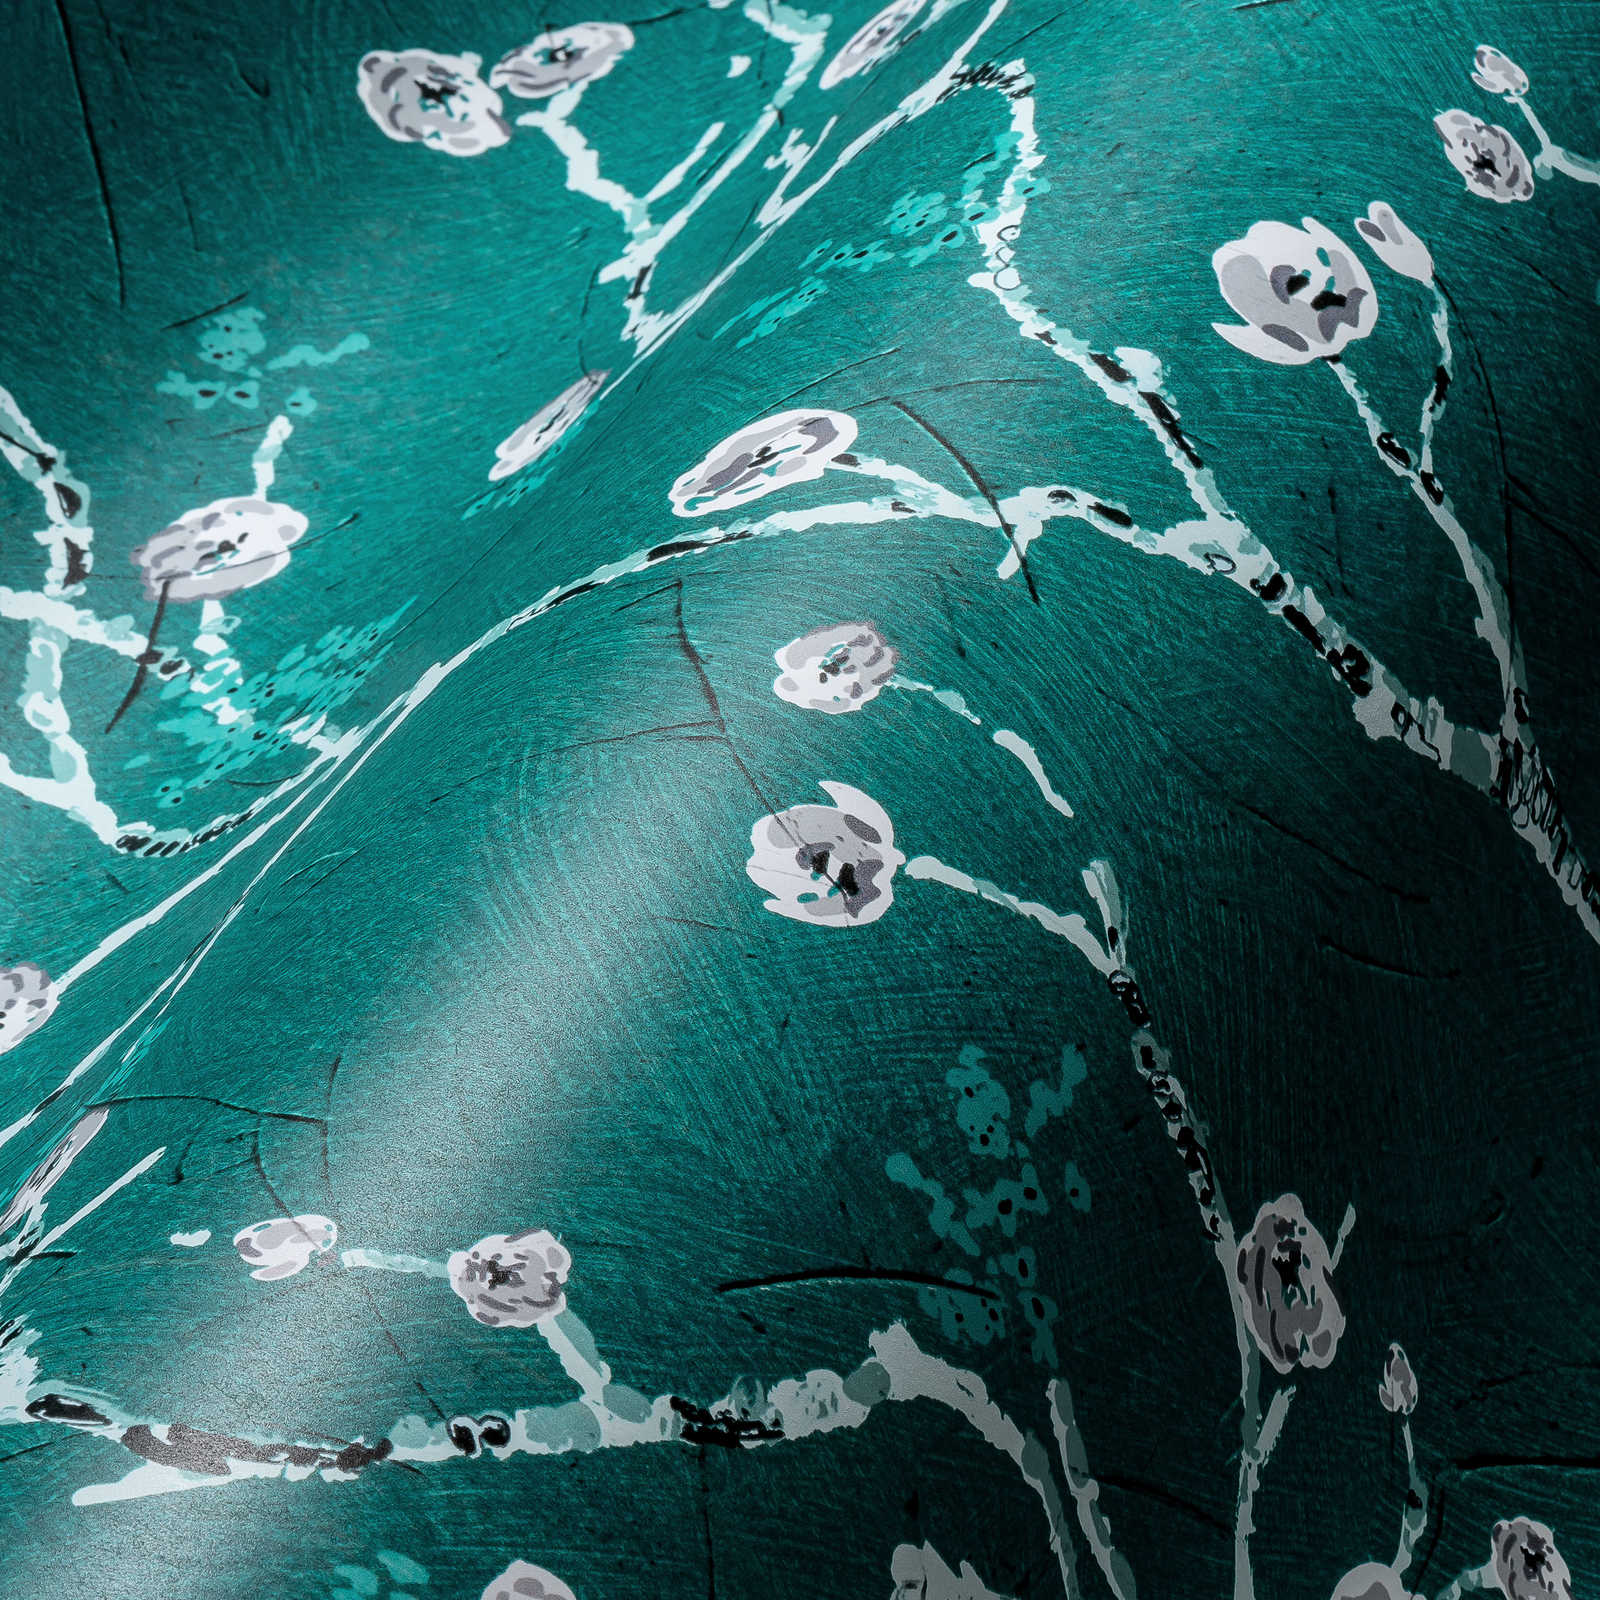             Dunkelgrüne Tapete mit Blüten Motiv im Asia Stil
        